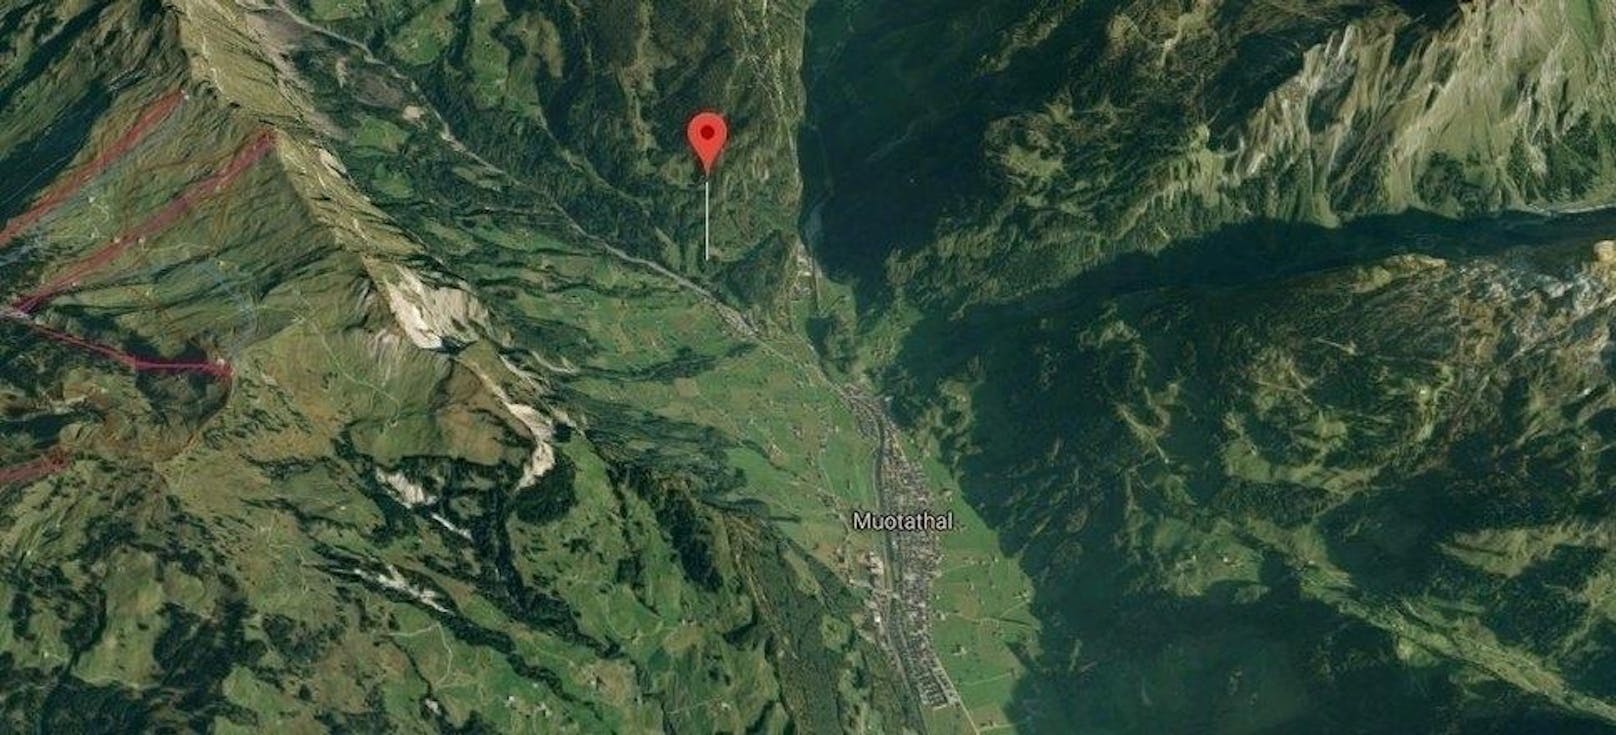 
Das Hölloch befindet sich im Muotatal in der Schweiz